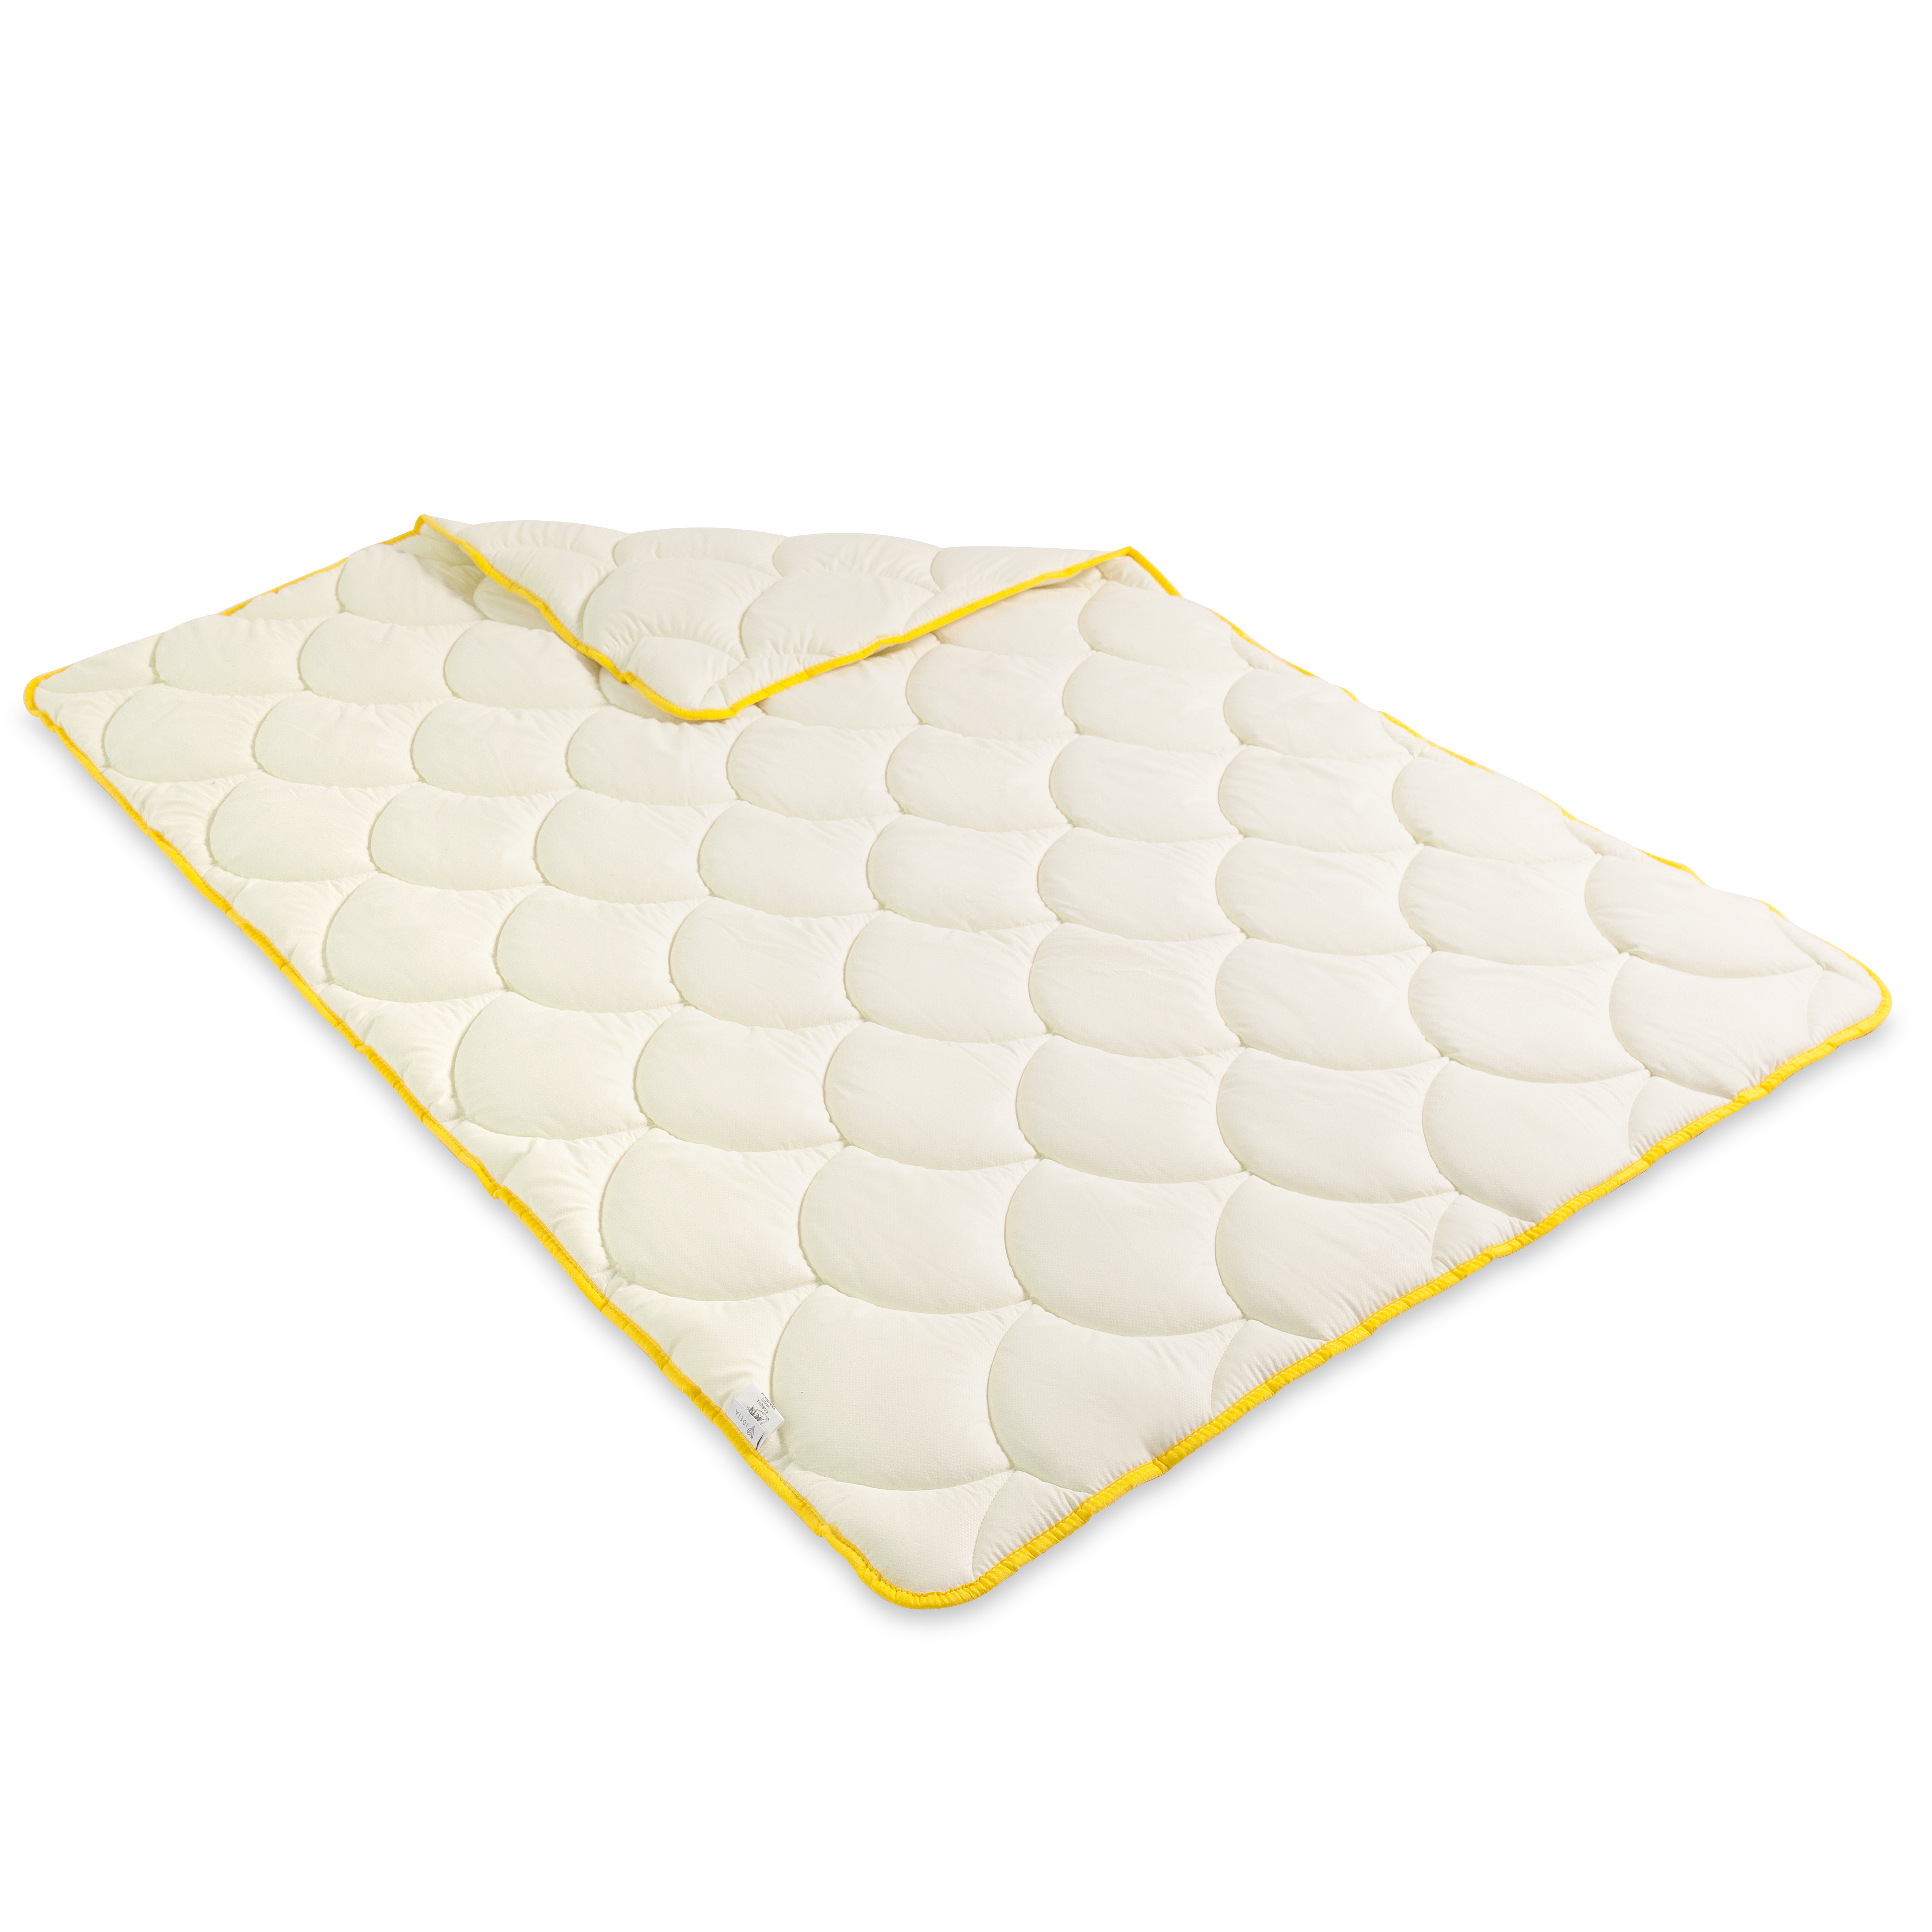 Одеяло зимнее Ideia Popcorn, полуторный, 200х140 см, молочный (8-35036 молоко) - фото 1